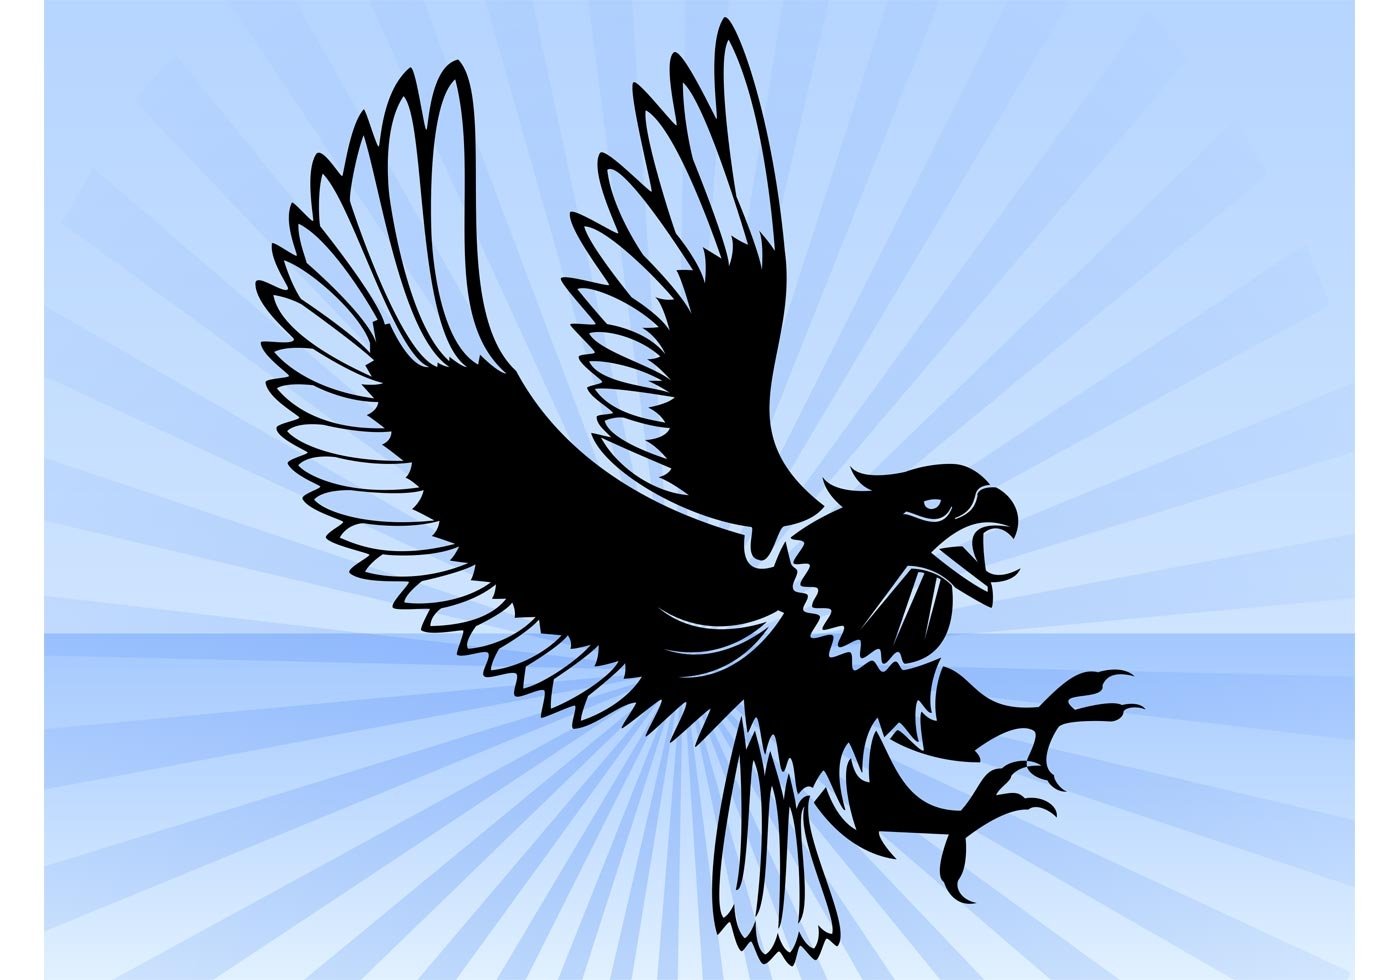 Орел изображение символ